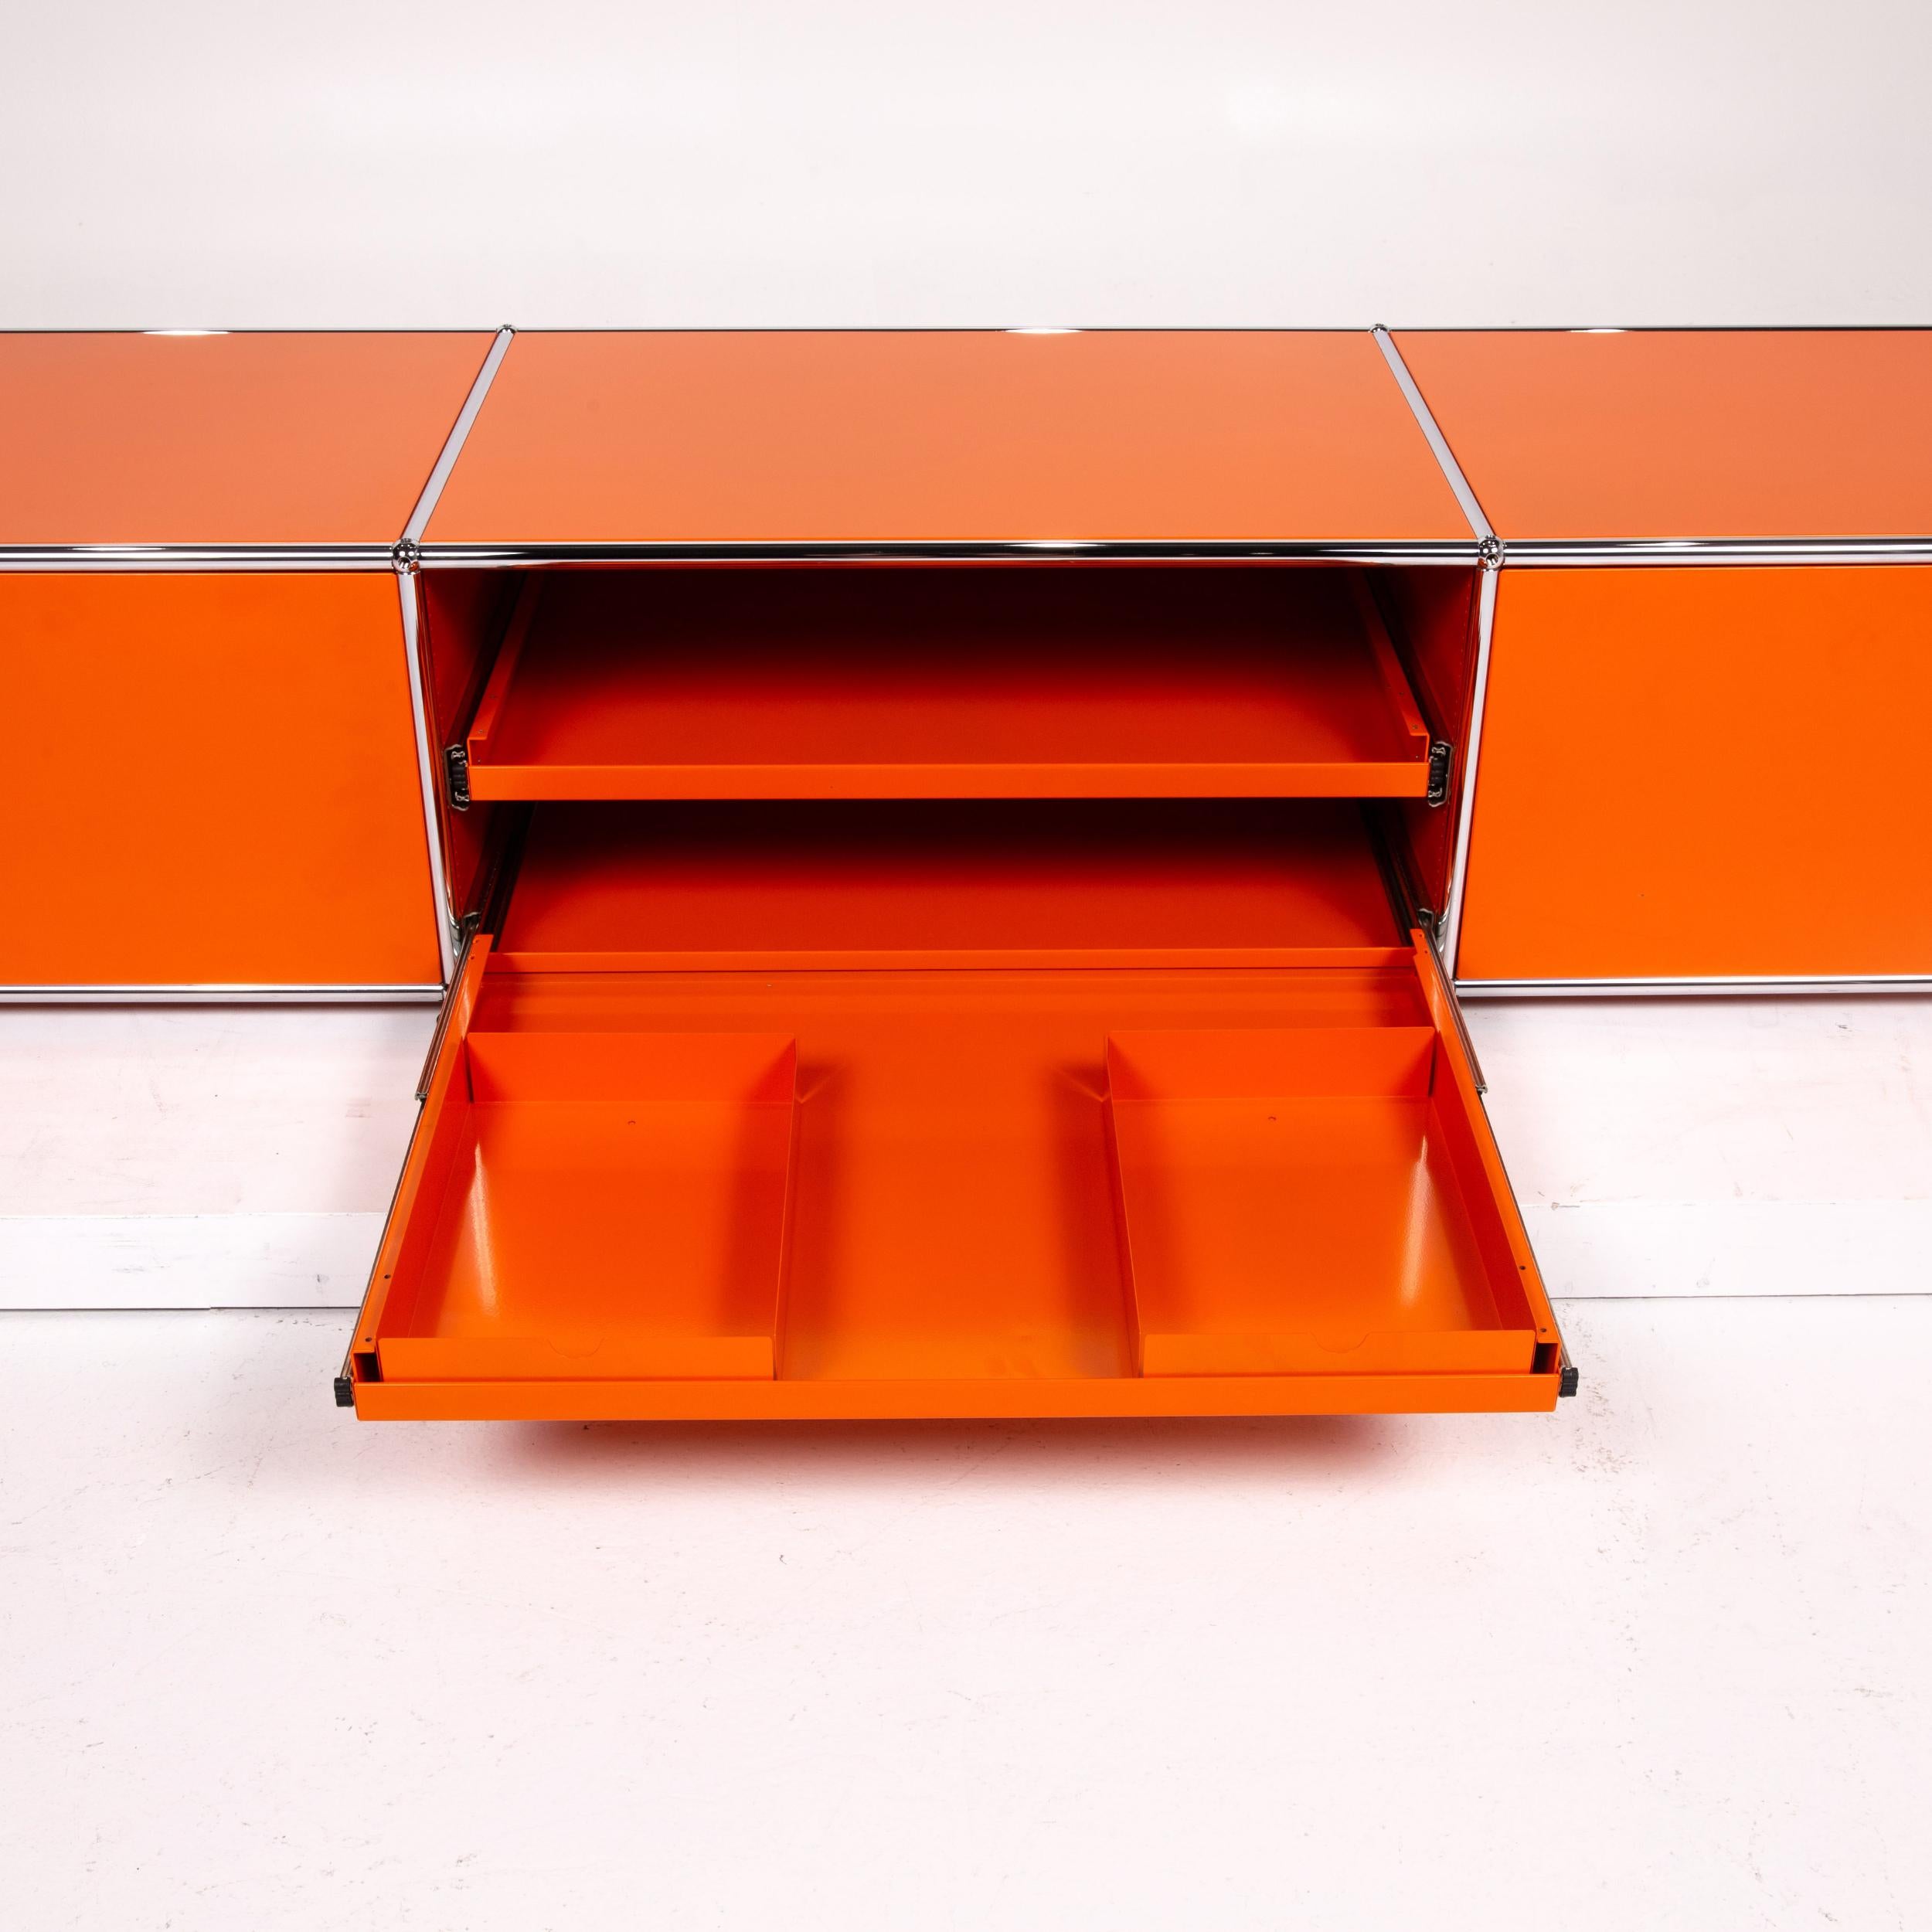 German Usm Haller Metal Sideboard Orange Office Furniture Shelf Modular For Sale